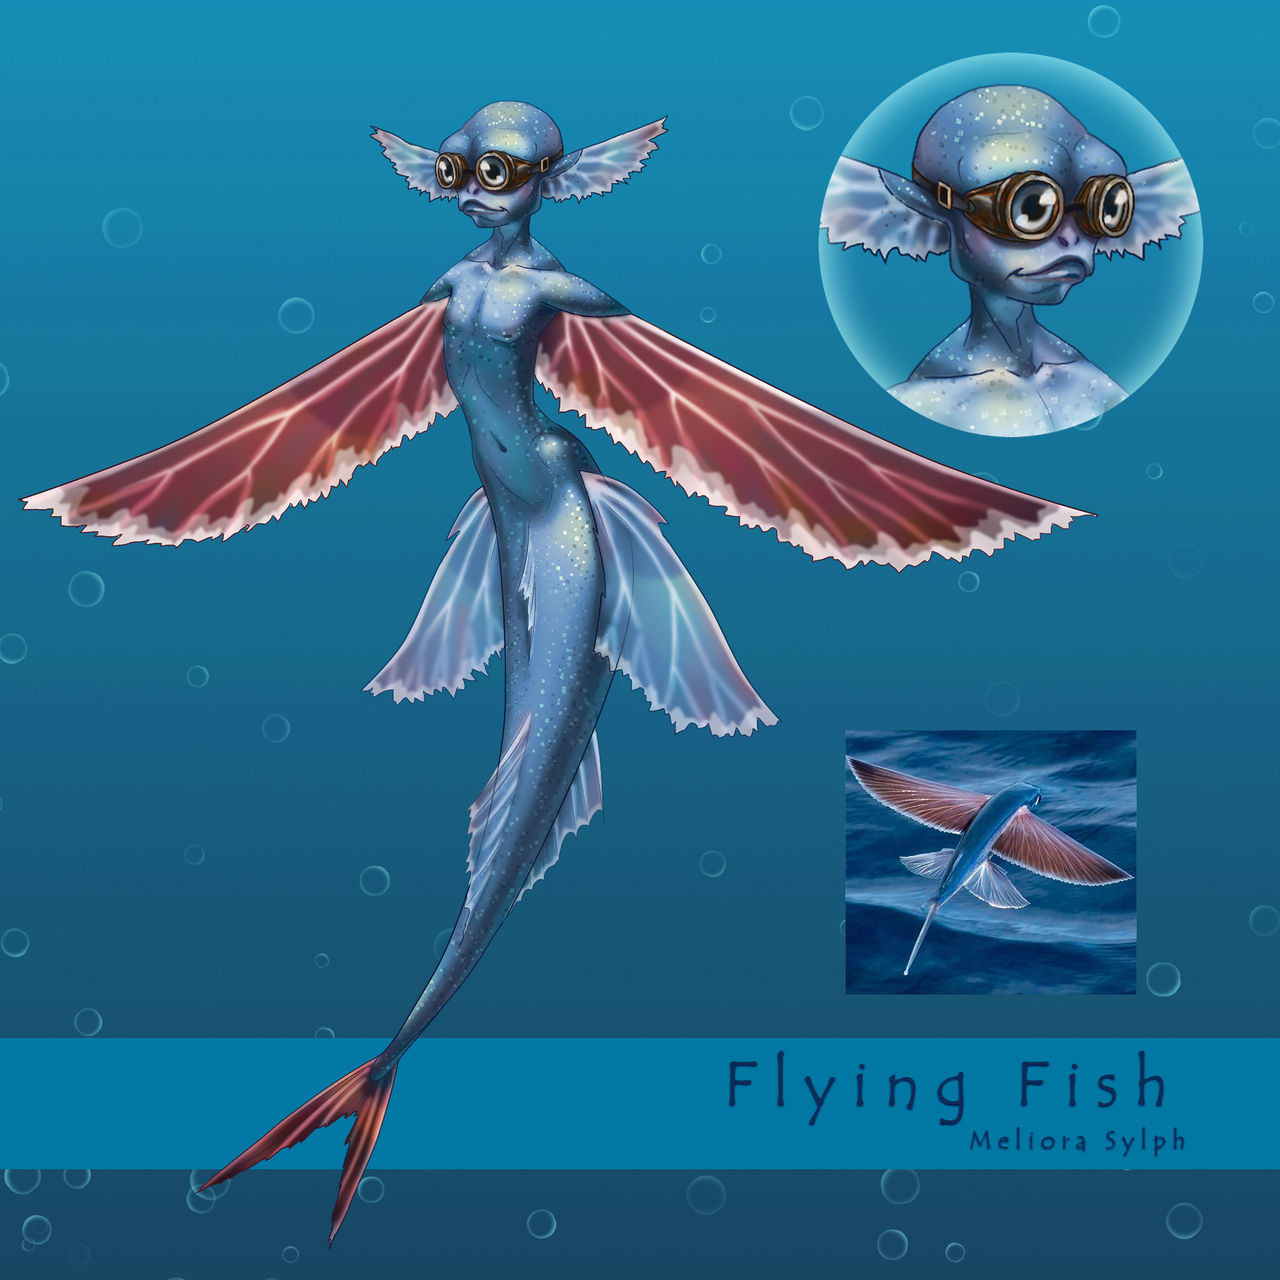 Flying Fish - Mermay 2020 by MelioraSylph on DeviantArt